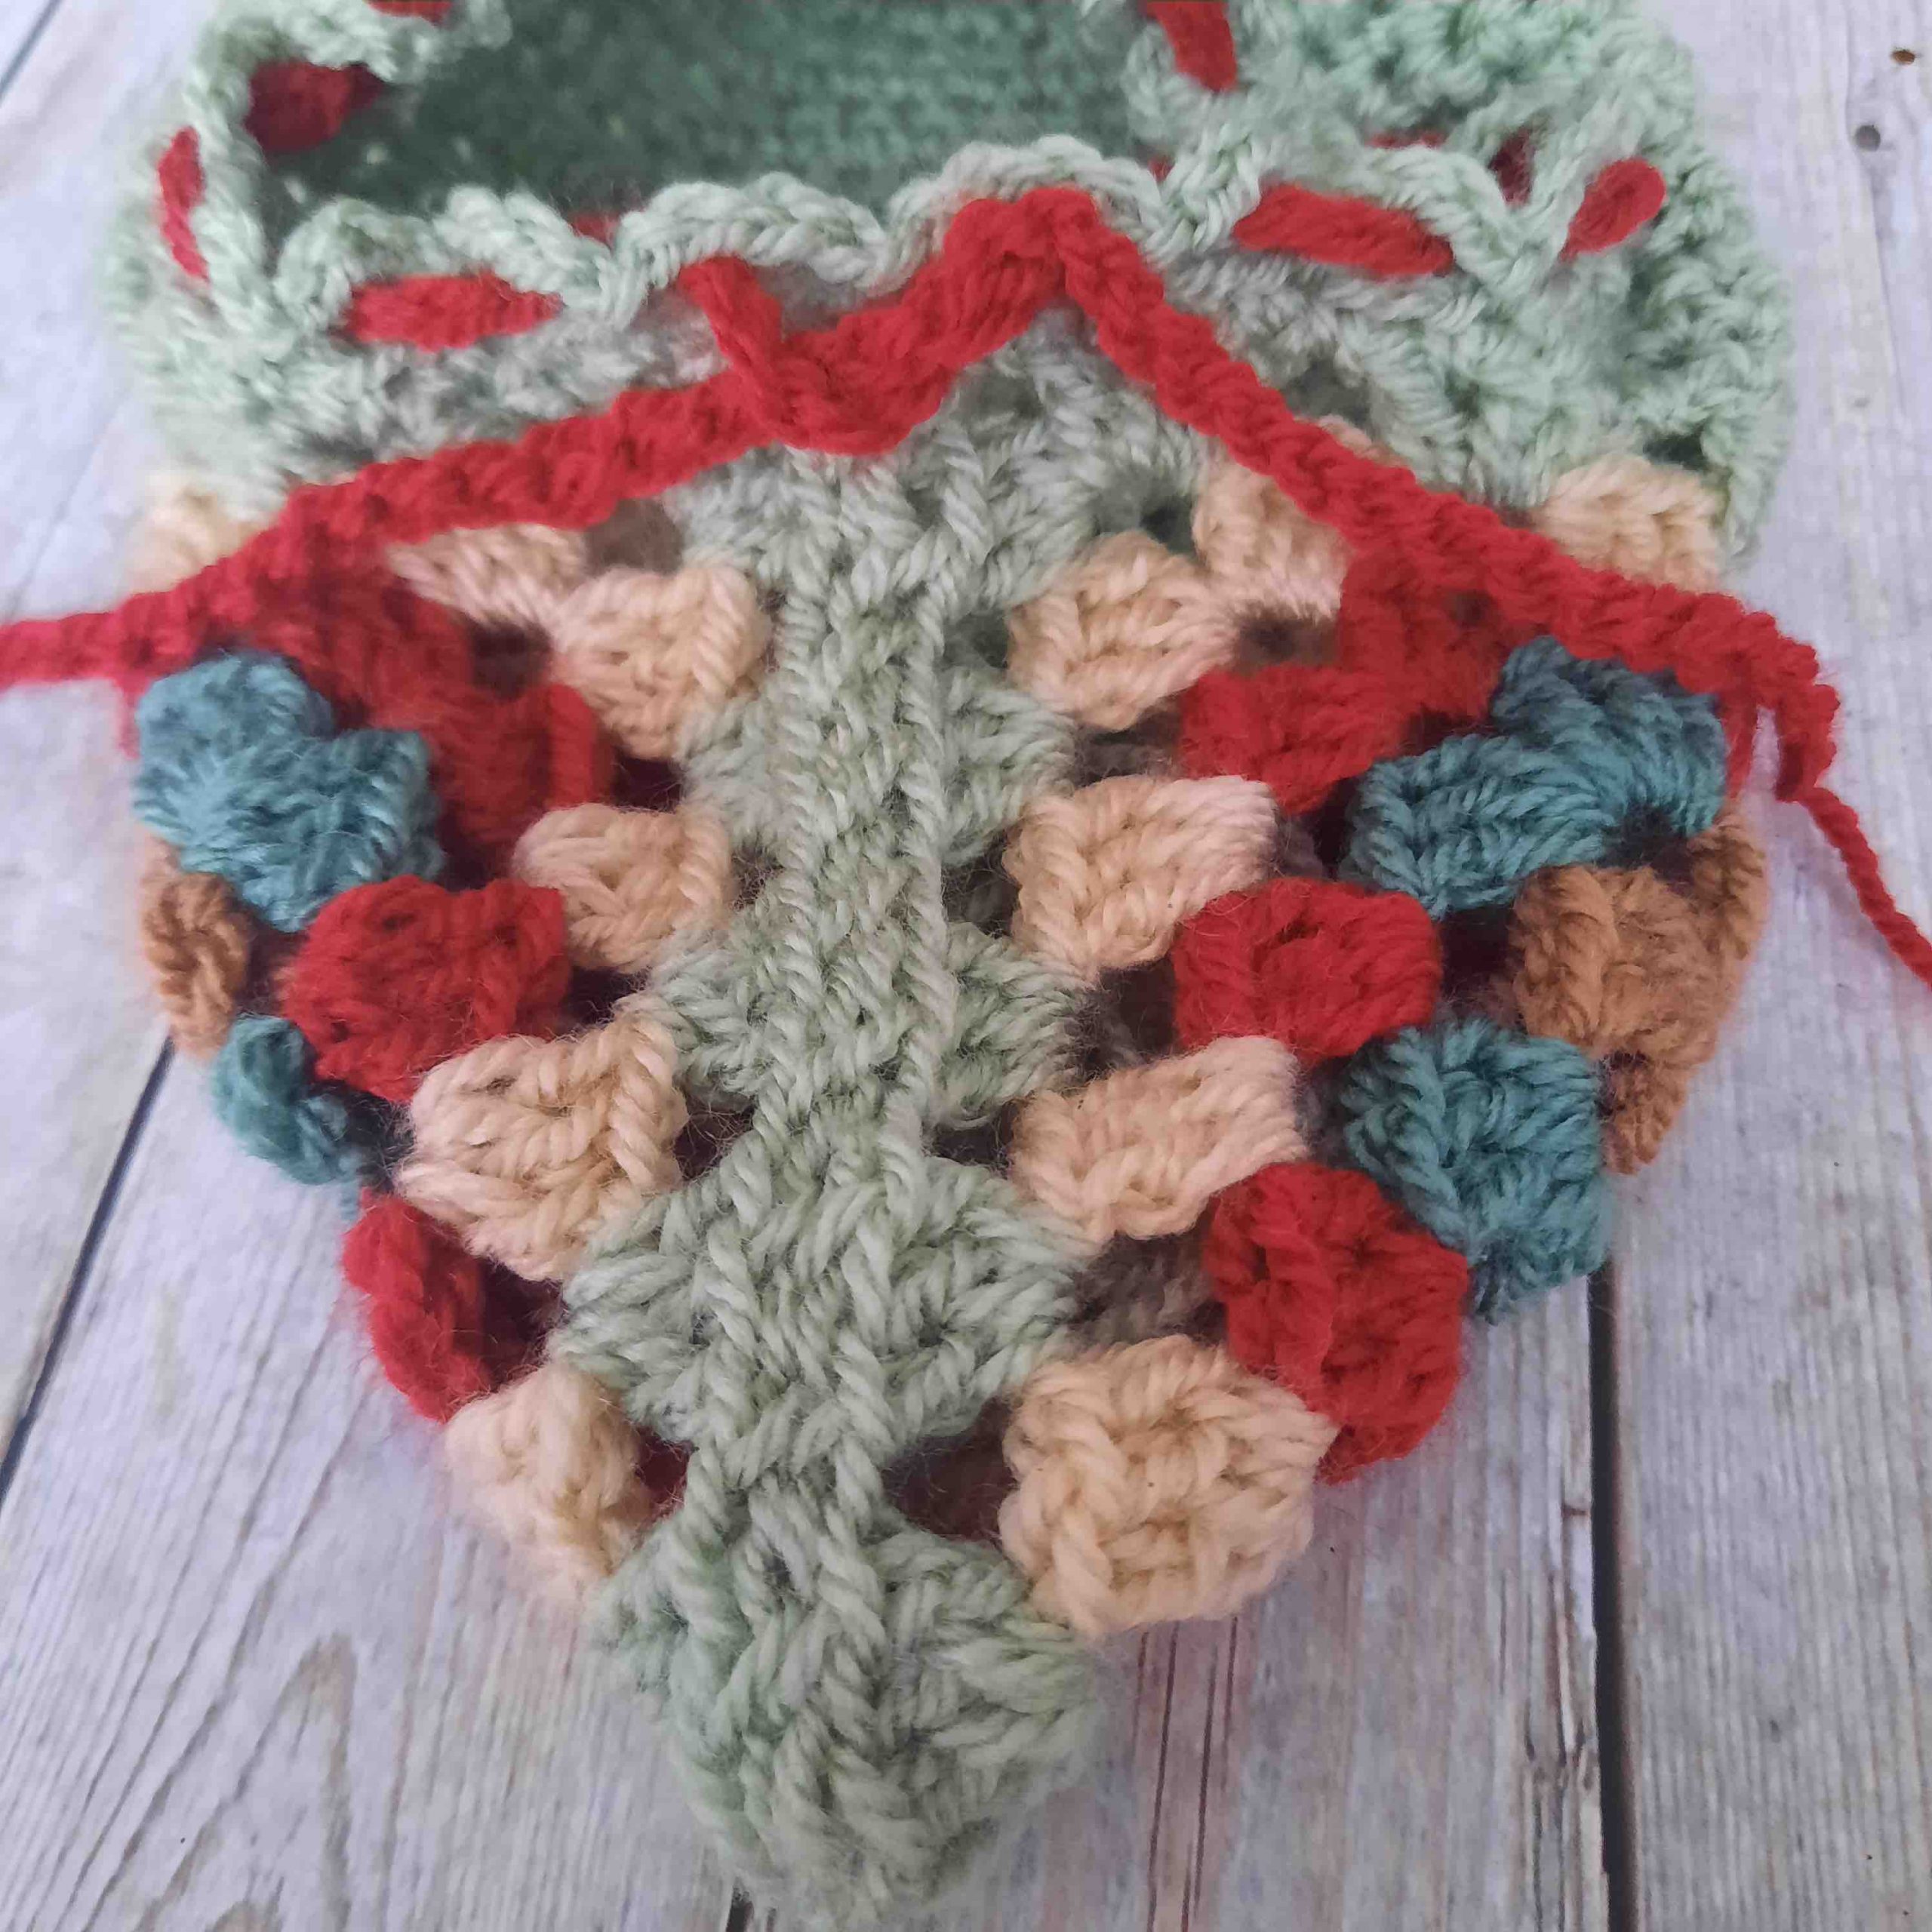 easy grandma's crochet slippers